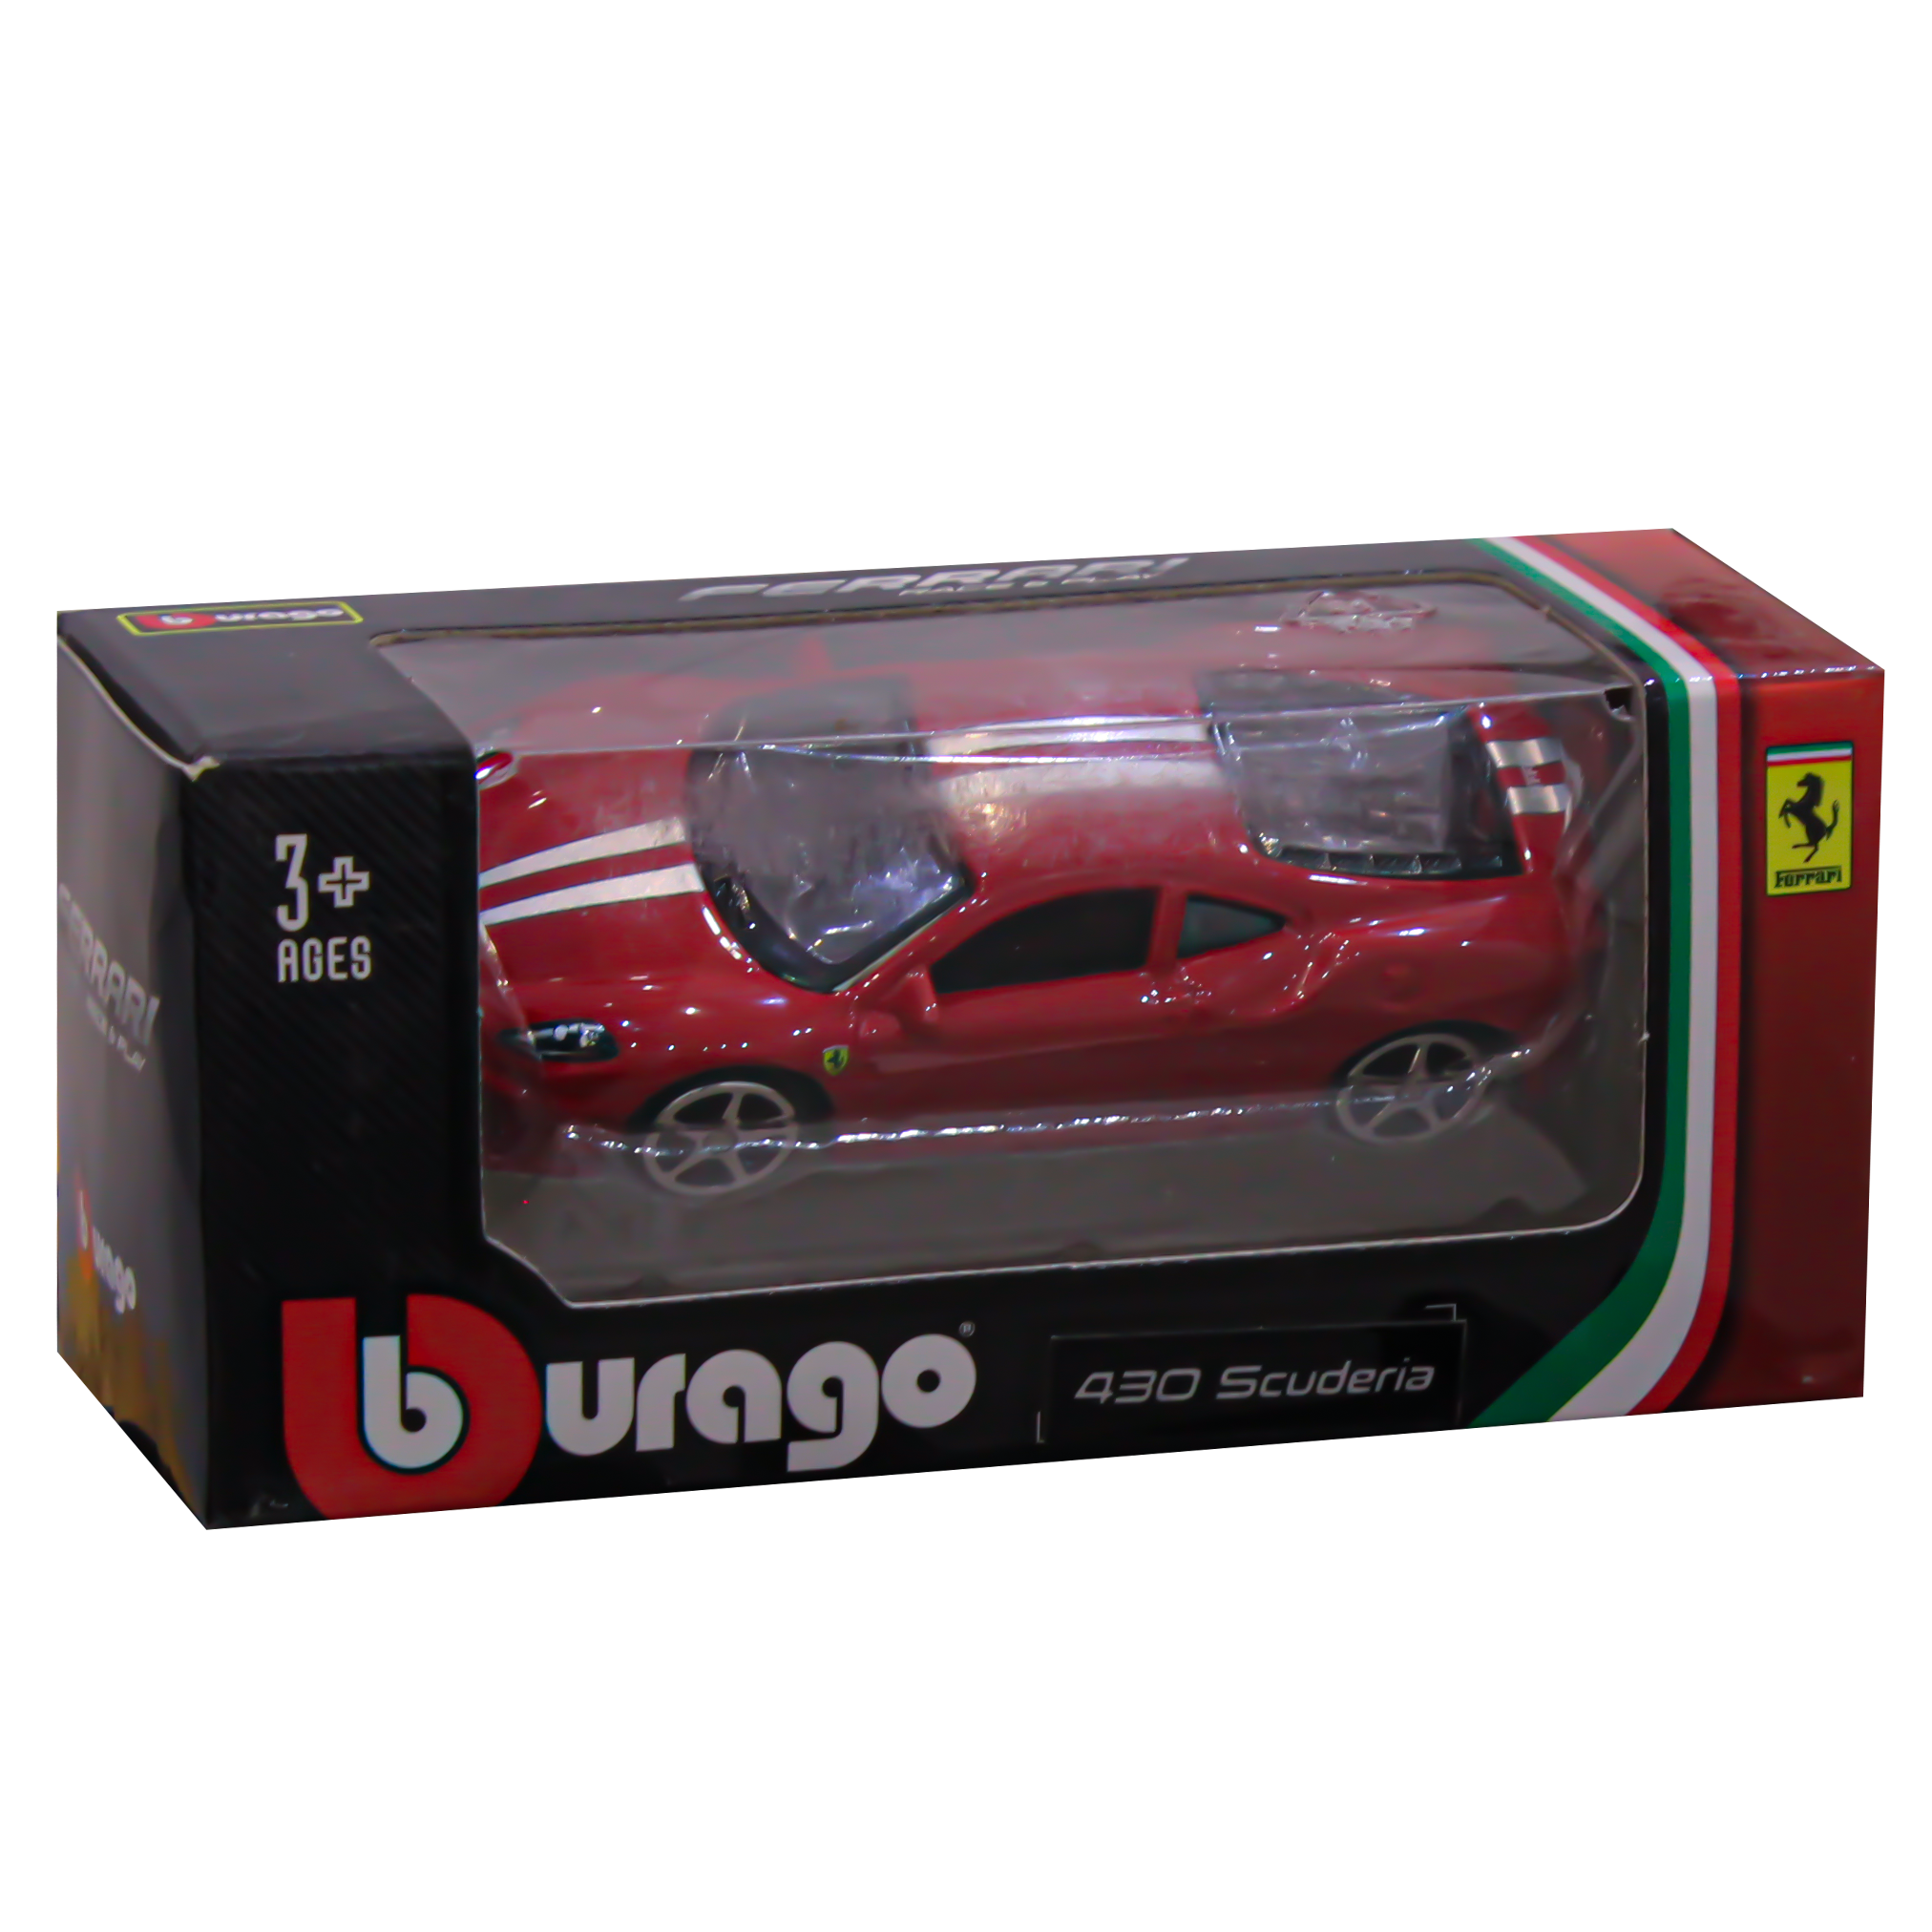 Burago Ferrari Race & Play Car - 430 Scuderia